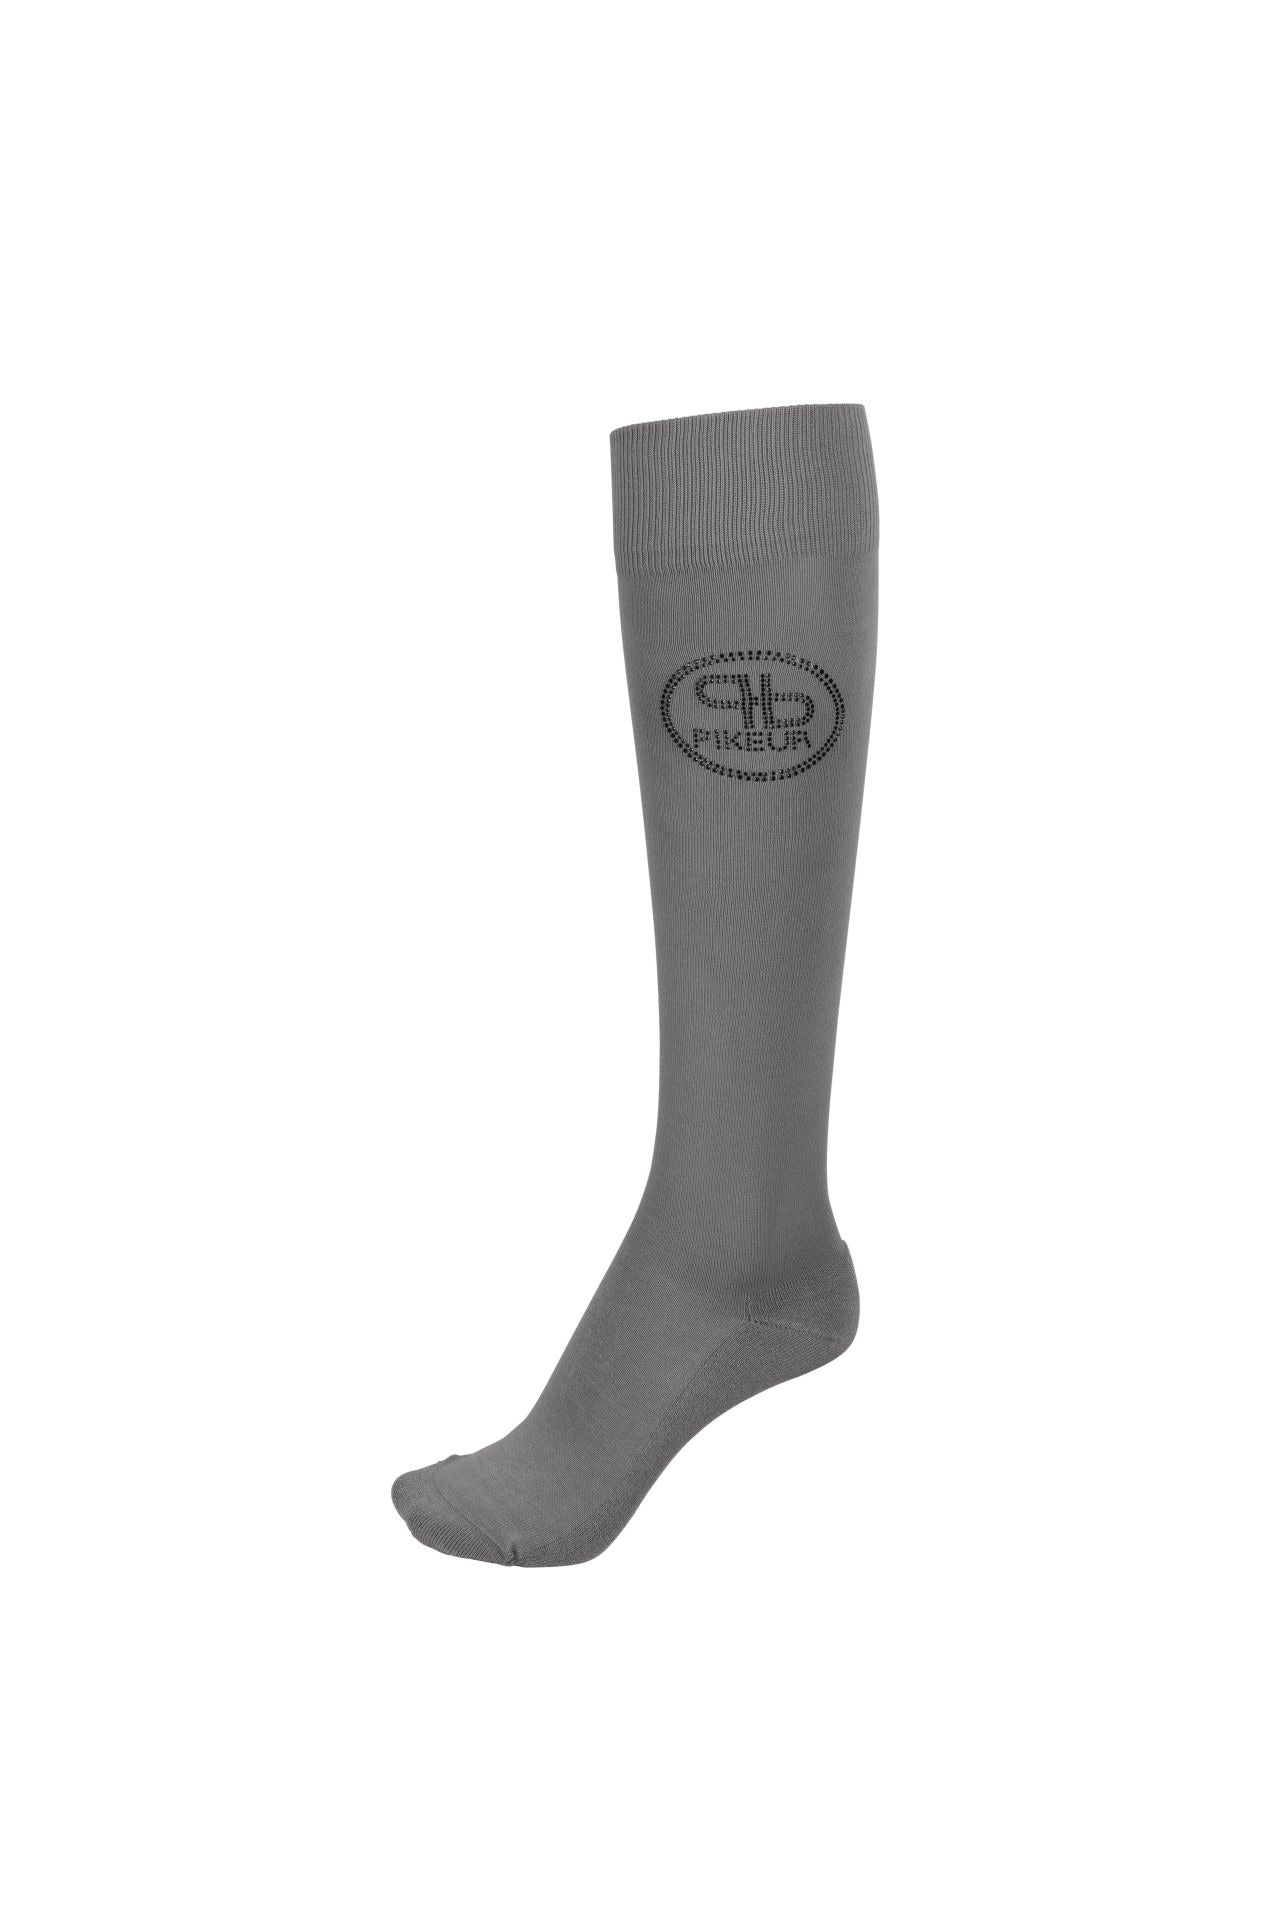 Pikeur Socks 4732 Selection